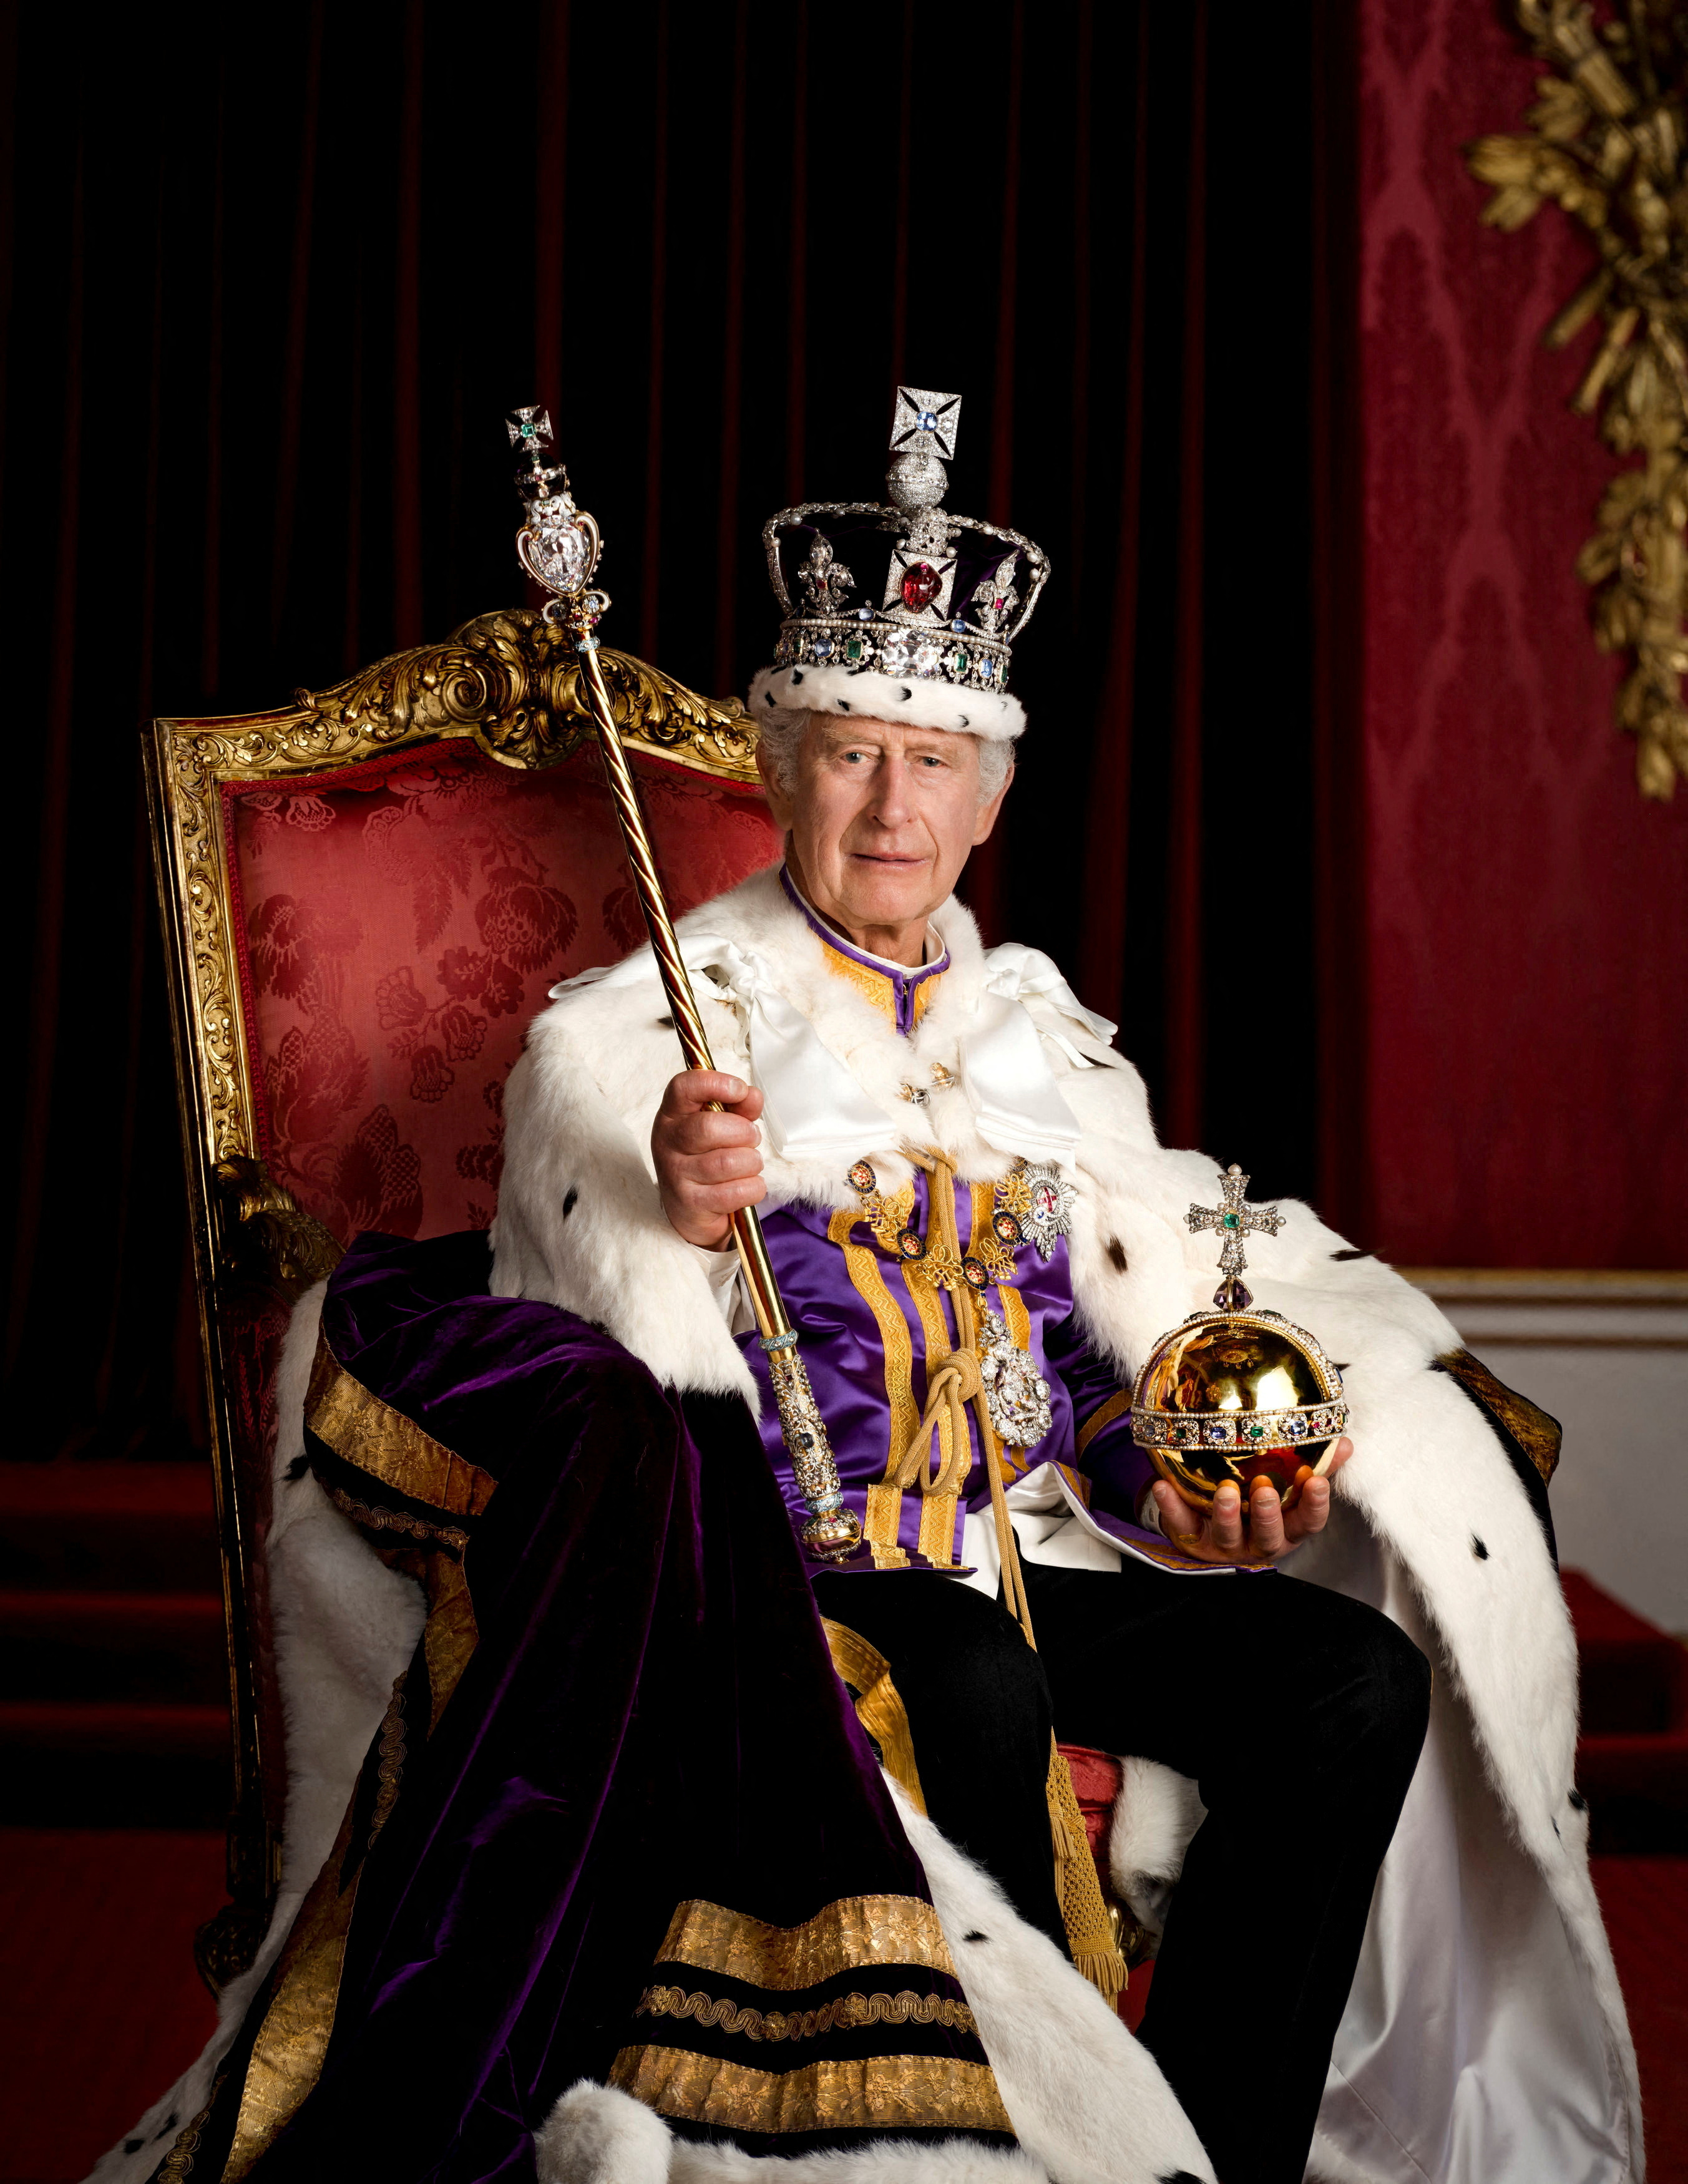 El rey Carlos de Gran Bretaña se representa con todas sus insignias en el Salón del Trono en el Palacio de Buckingham, Londres. El Rey viste la Túnica de Estado, la Corona del Estado Imperial y sostiene el Orbe del Soberano y el Cetro del Soberano con la Cruz. Está sentado en uno de los dos tronos de 1902 que se hicieron para el futuro rey Jorge V y la reina María para su uso en la coronación del rey Eduardo VII. Estas sillas del trono también se usaron en el fondo de la coronación de 1937 del rey Jorge VI y la reina Isabel, y por el rey Carlos III y la reina Camila en Westminster Hall para recibir discursos de los presidentes de ambas cámaras del parlamento el año pasado. Imagen disponible: 8 de mayo de 2023. Hugo Burnand/Casa Real 2023/Folleto vía REUTERS